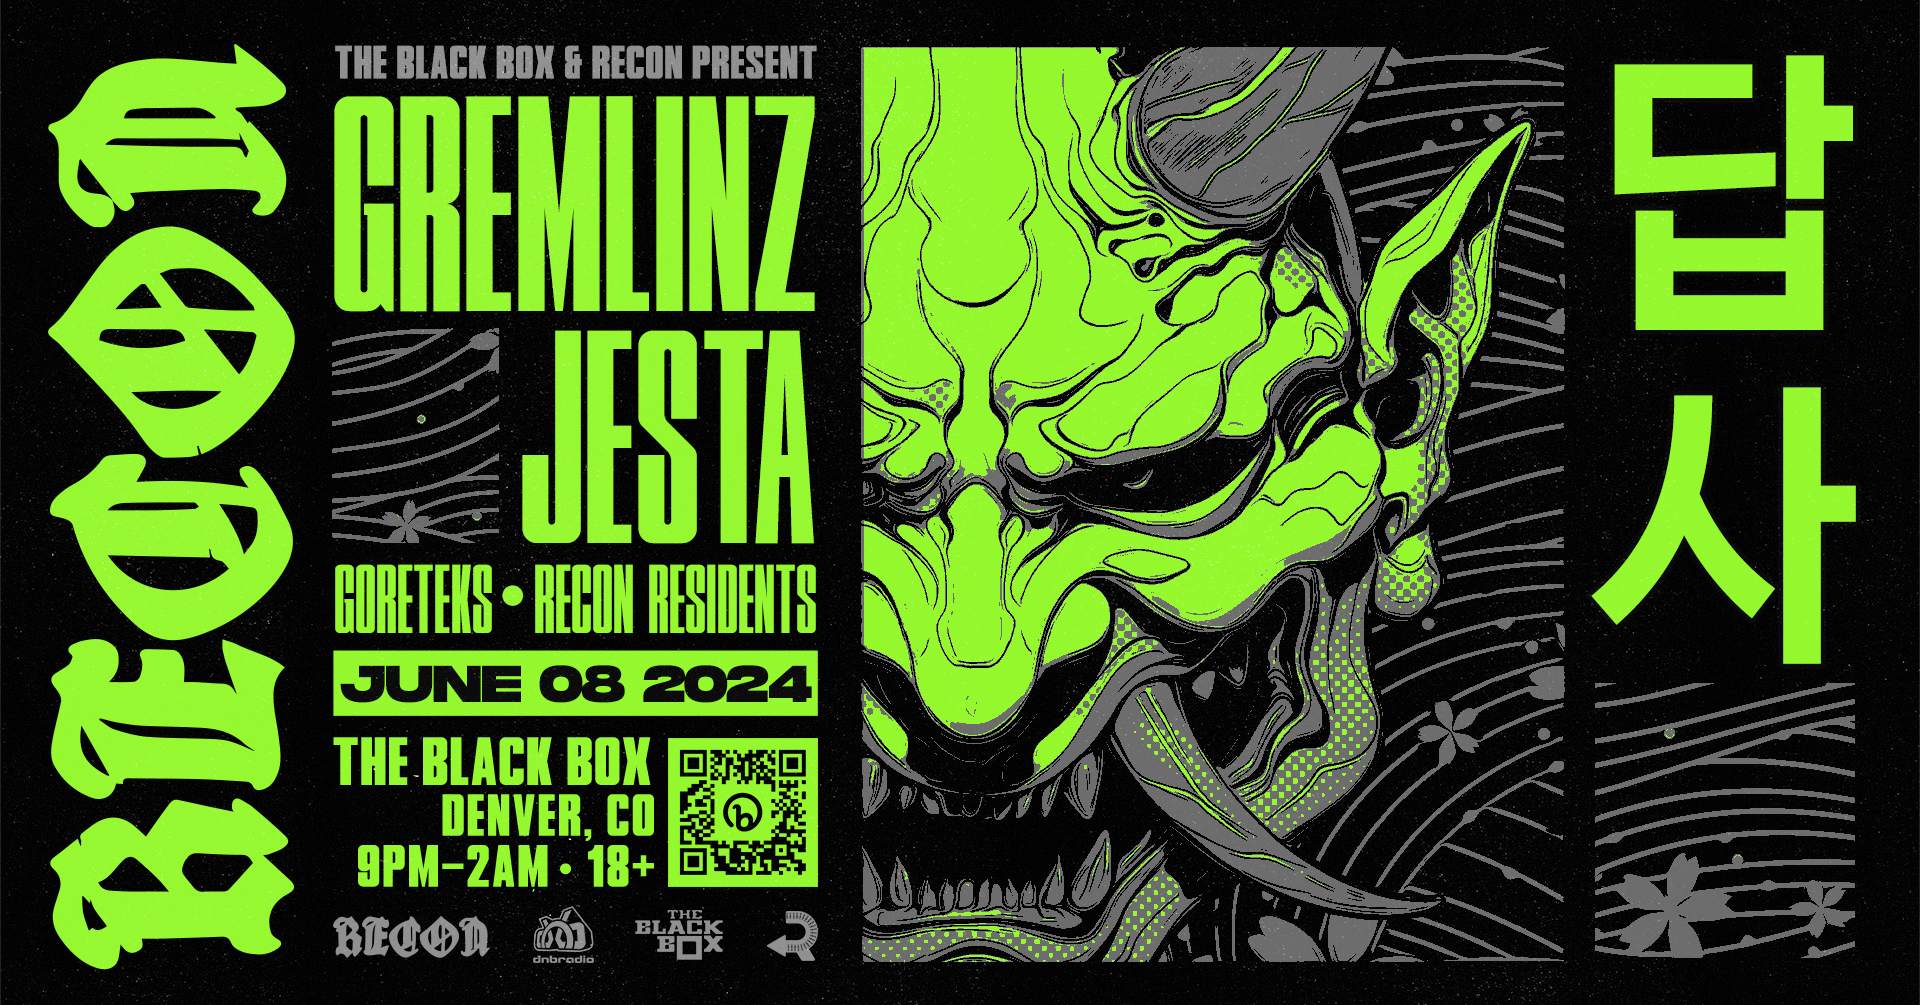 The Black Box & Recon DNB present: Gremlinz & Jesta - フライヤー表